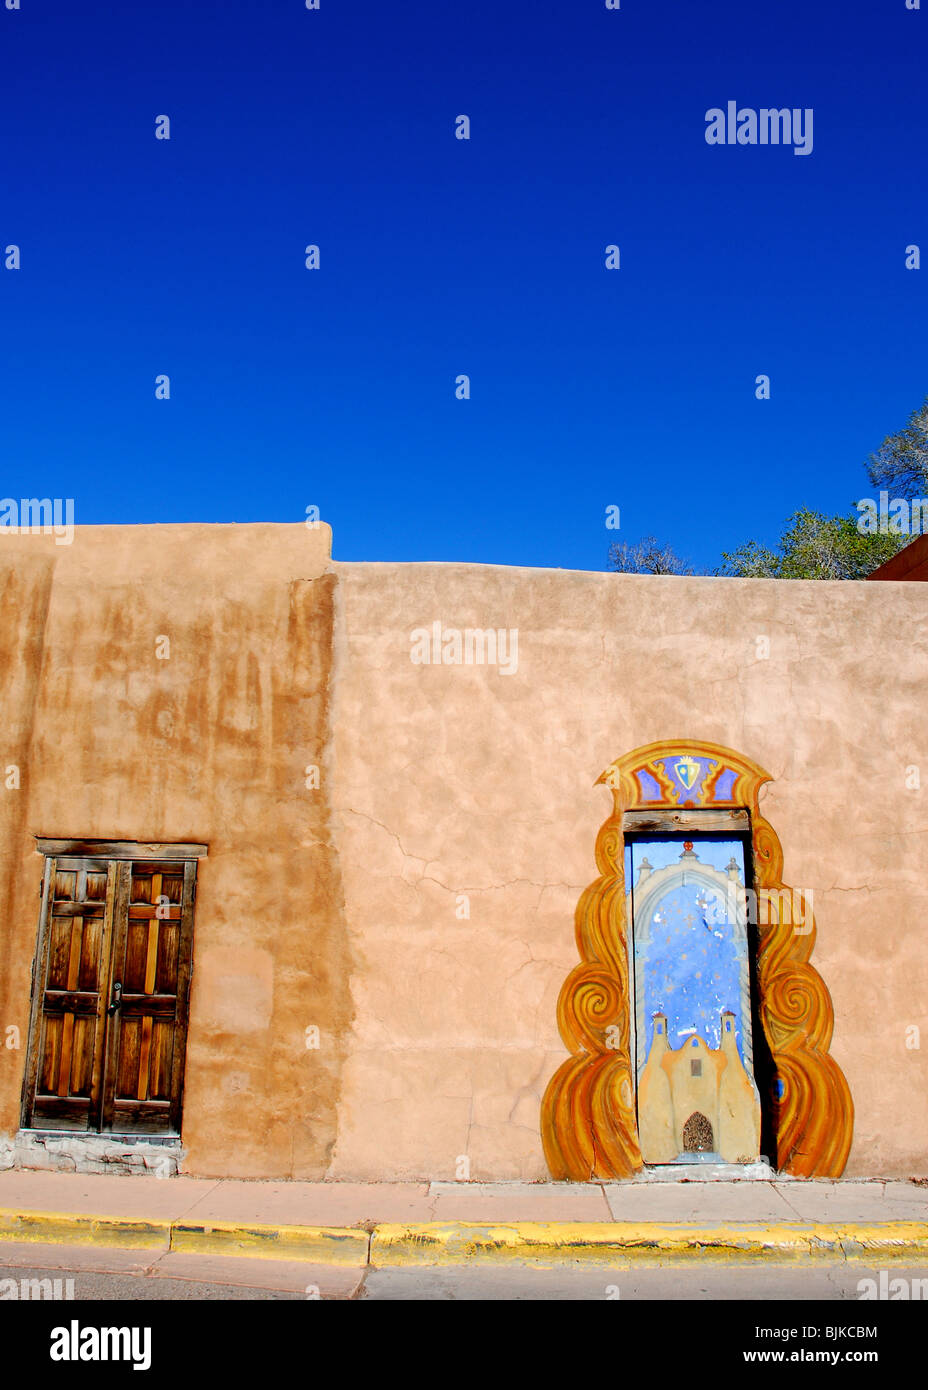 Santa Fe, Nouveau Mexique, USA - Le 20 avril 2008 : porte peint artistiquement et adobe mur avec ciel bleu brillant sur l'après-midi ensoleillé dans le centre-ville de Santa Fe. Banque D'Images